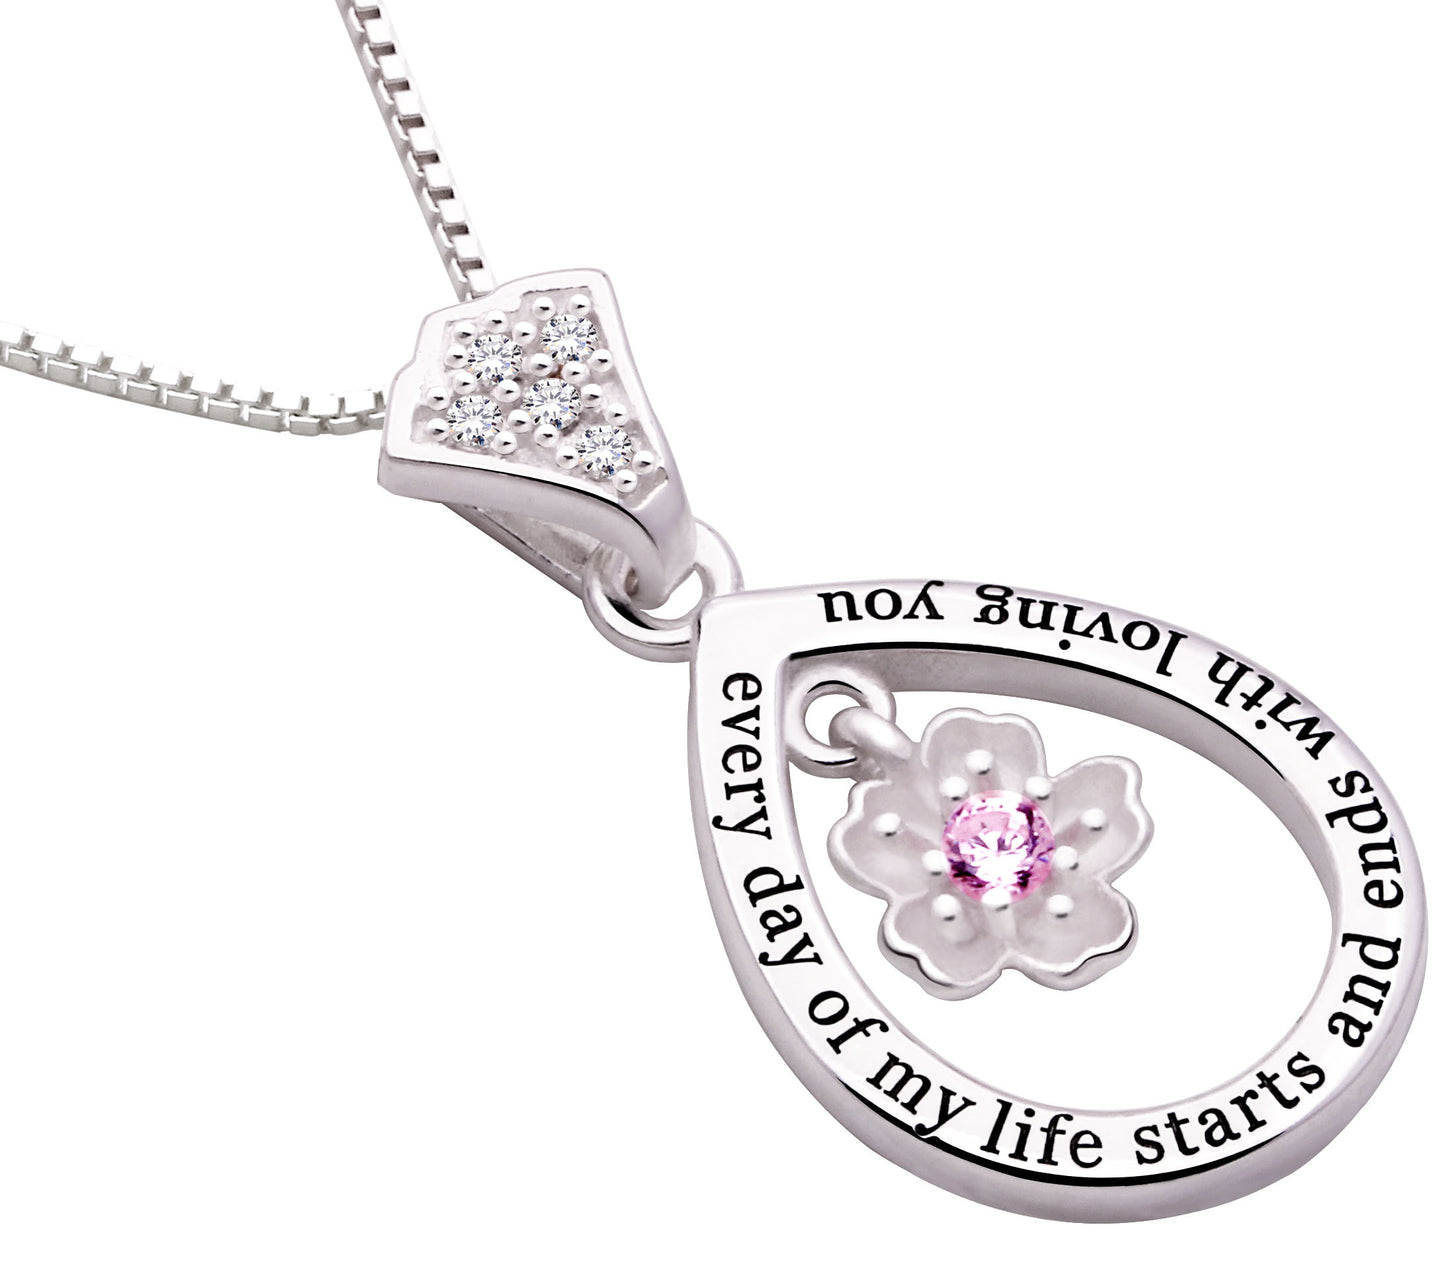 ALOV Jewelry Sterlingsilber-Halskette mit Anhänger „Jeder Tag meines Lebens beginnt und endet damit, dich zu lieben“.